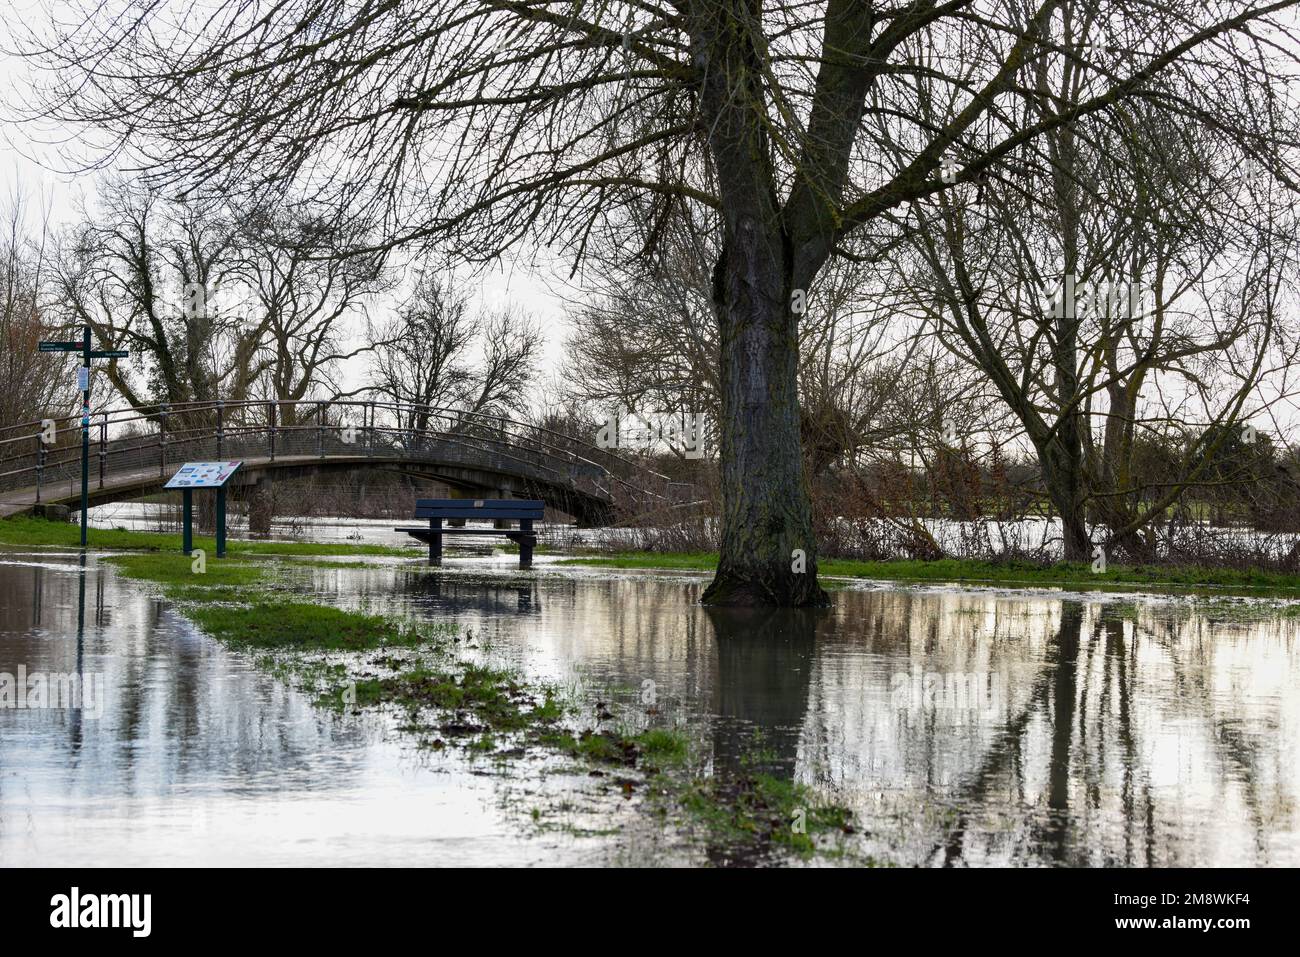 Inondation d'eau dans un parc public après que les rives de la rivière ont éclaté de fortes pluies Banque D'Images